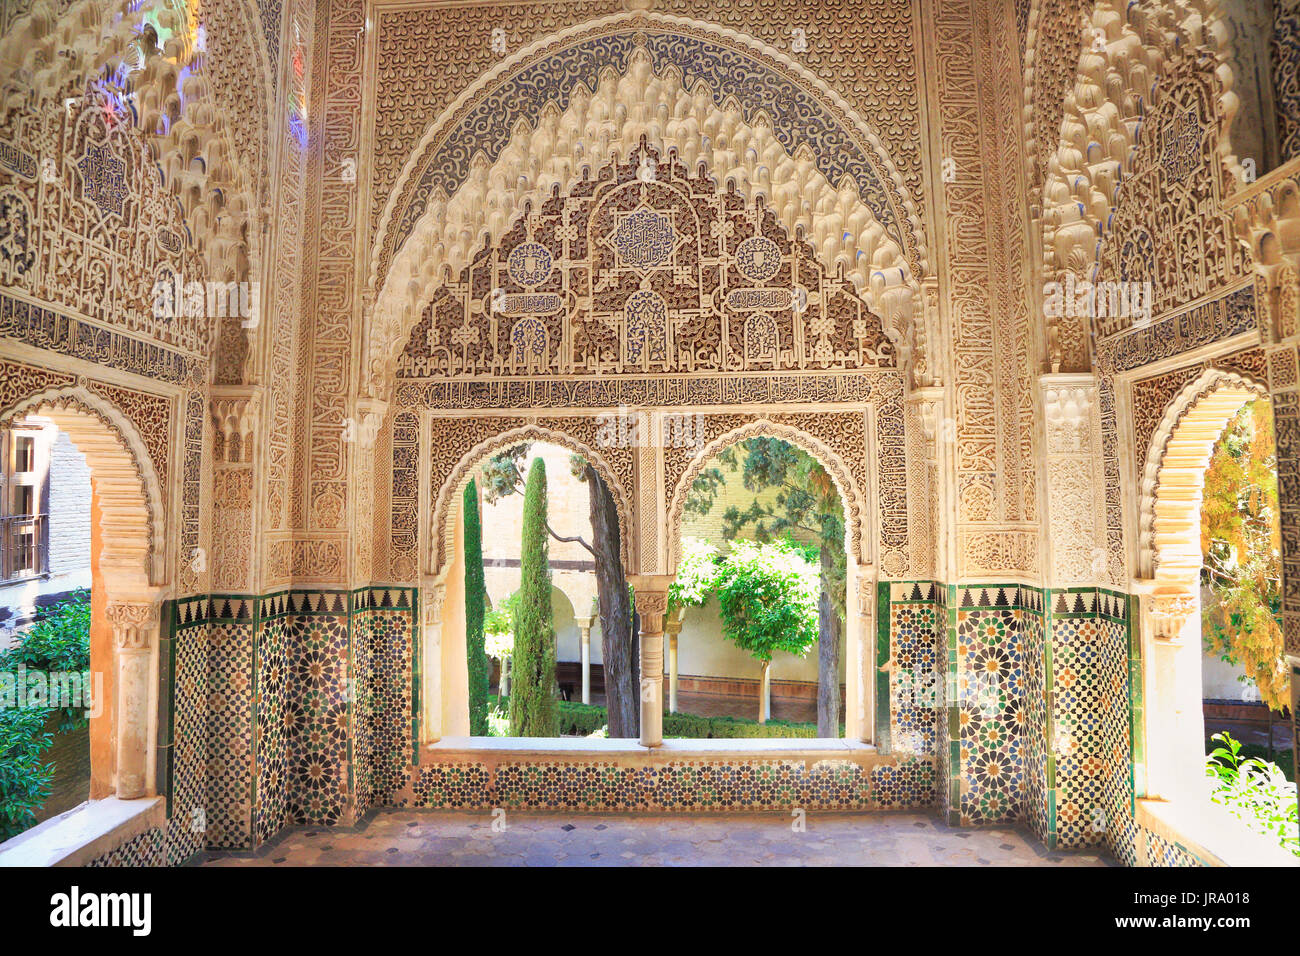 GRANADA, Spagna - 28 giugno 2017: architettura moresca del Palazzo Nasrin, l'Alhambra di Granada, Andalusia, Spagna, Europa. Foto Stock